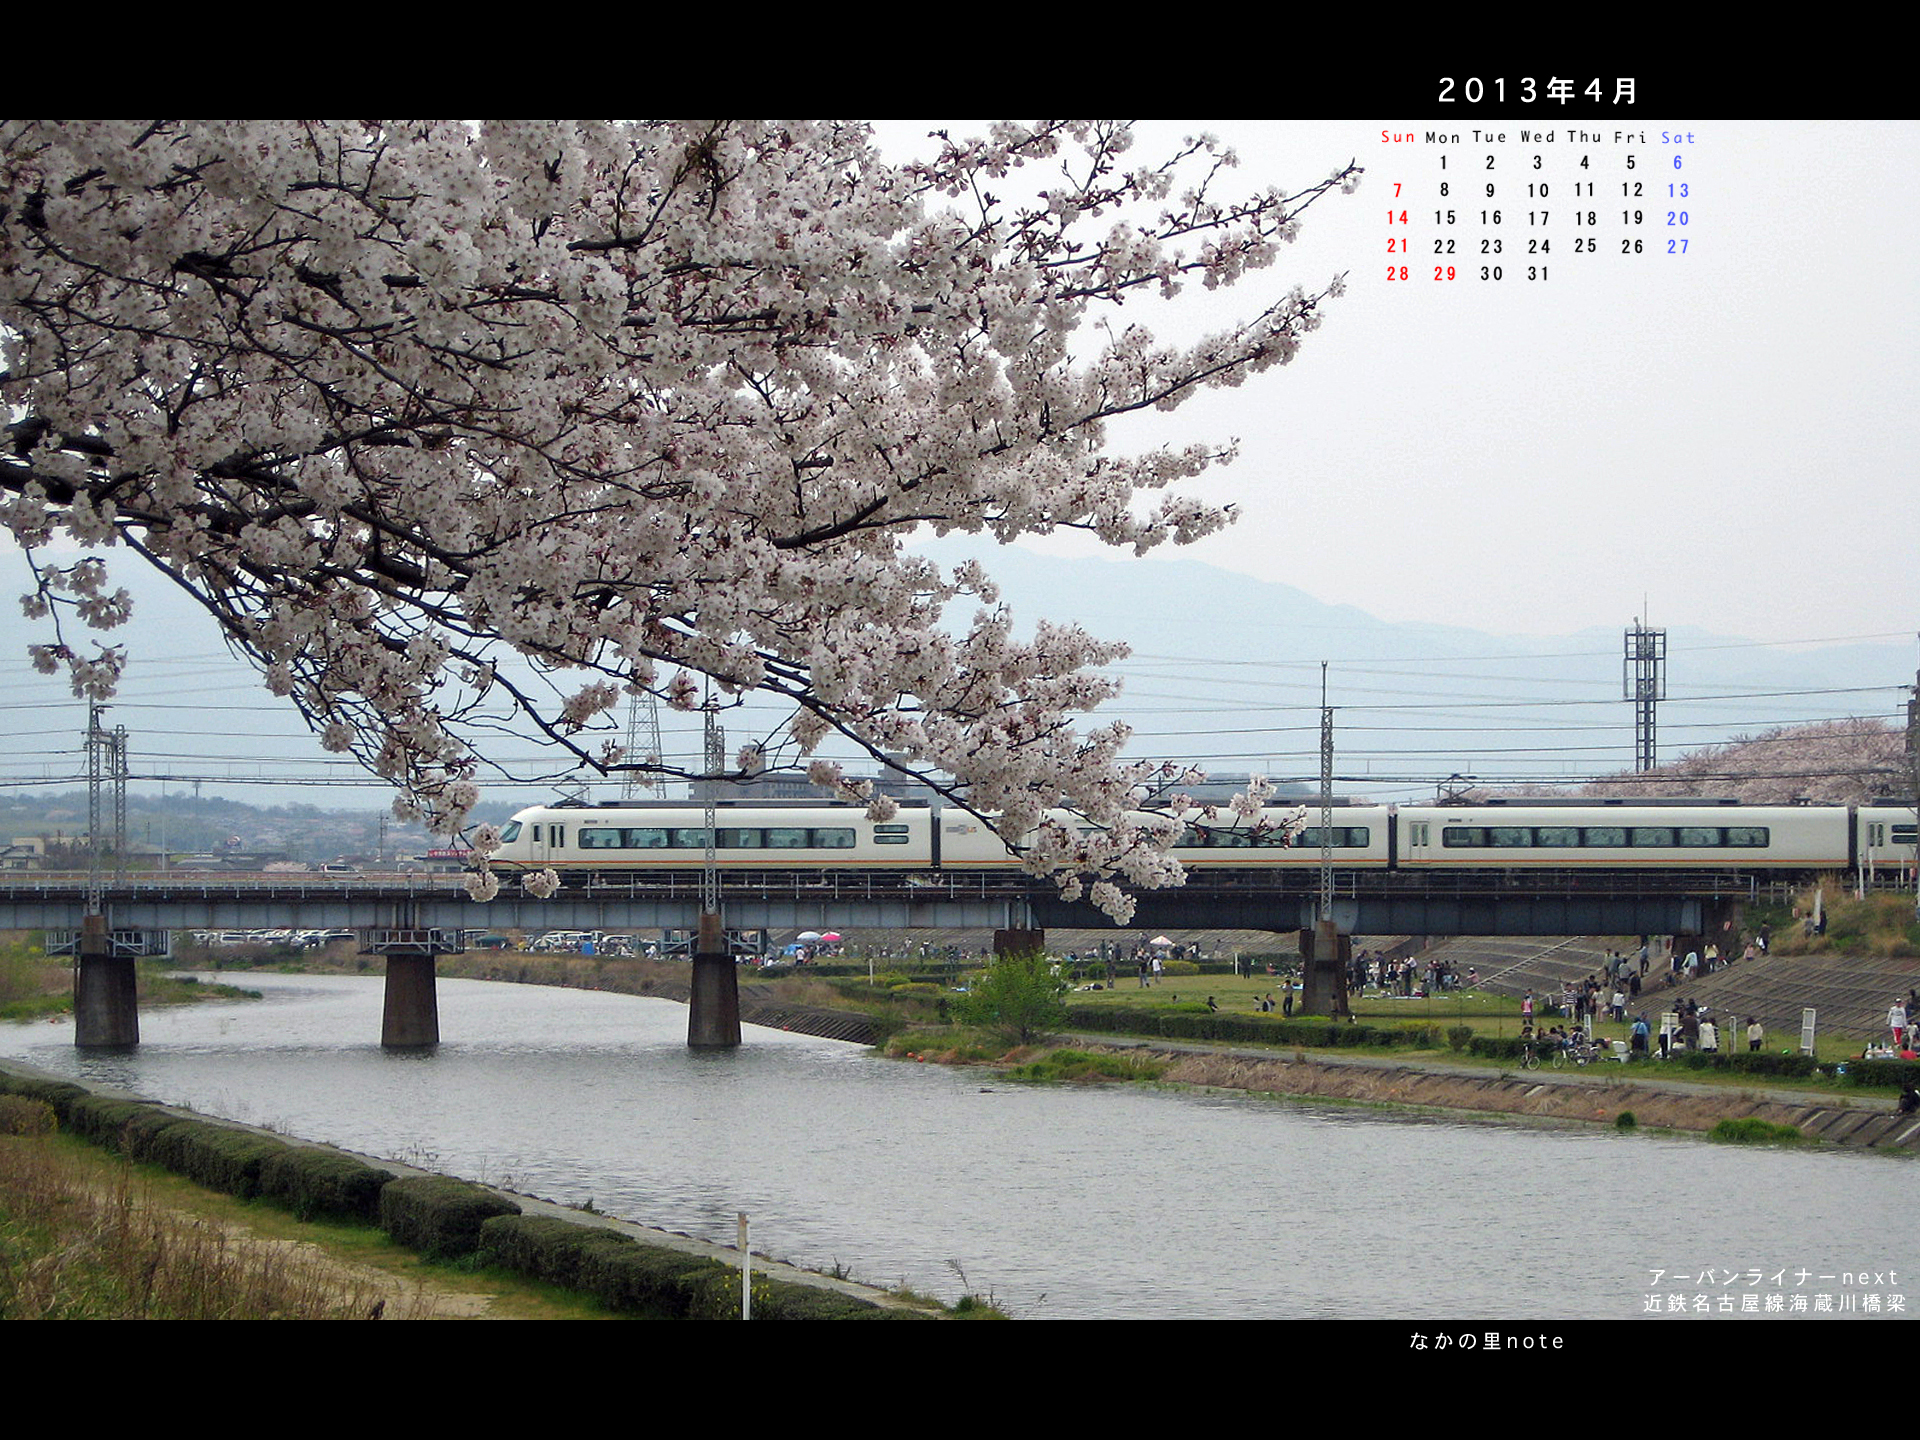 13年4月壁紙は桜のulnextと海蔵川橋梁 北播磨ローカルネットワーク